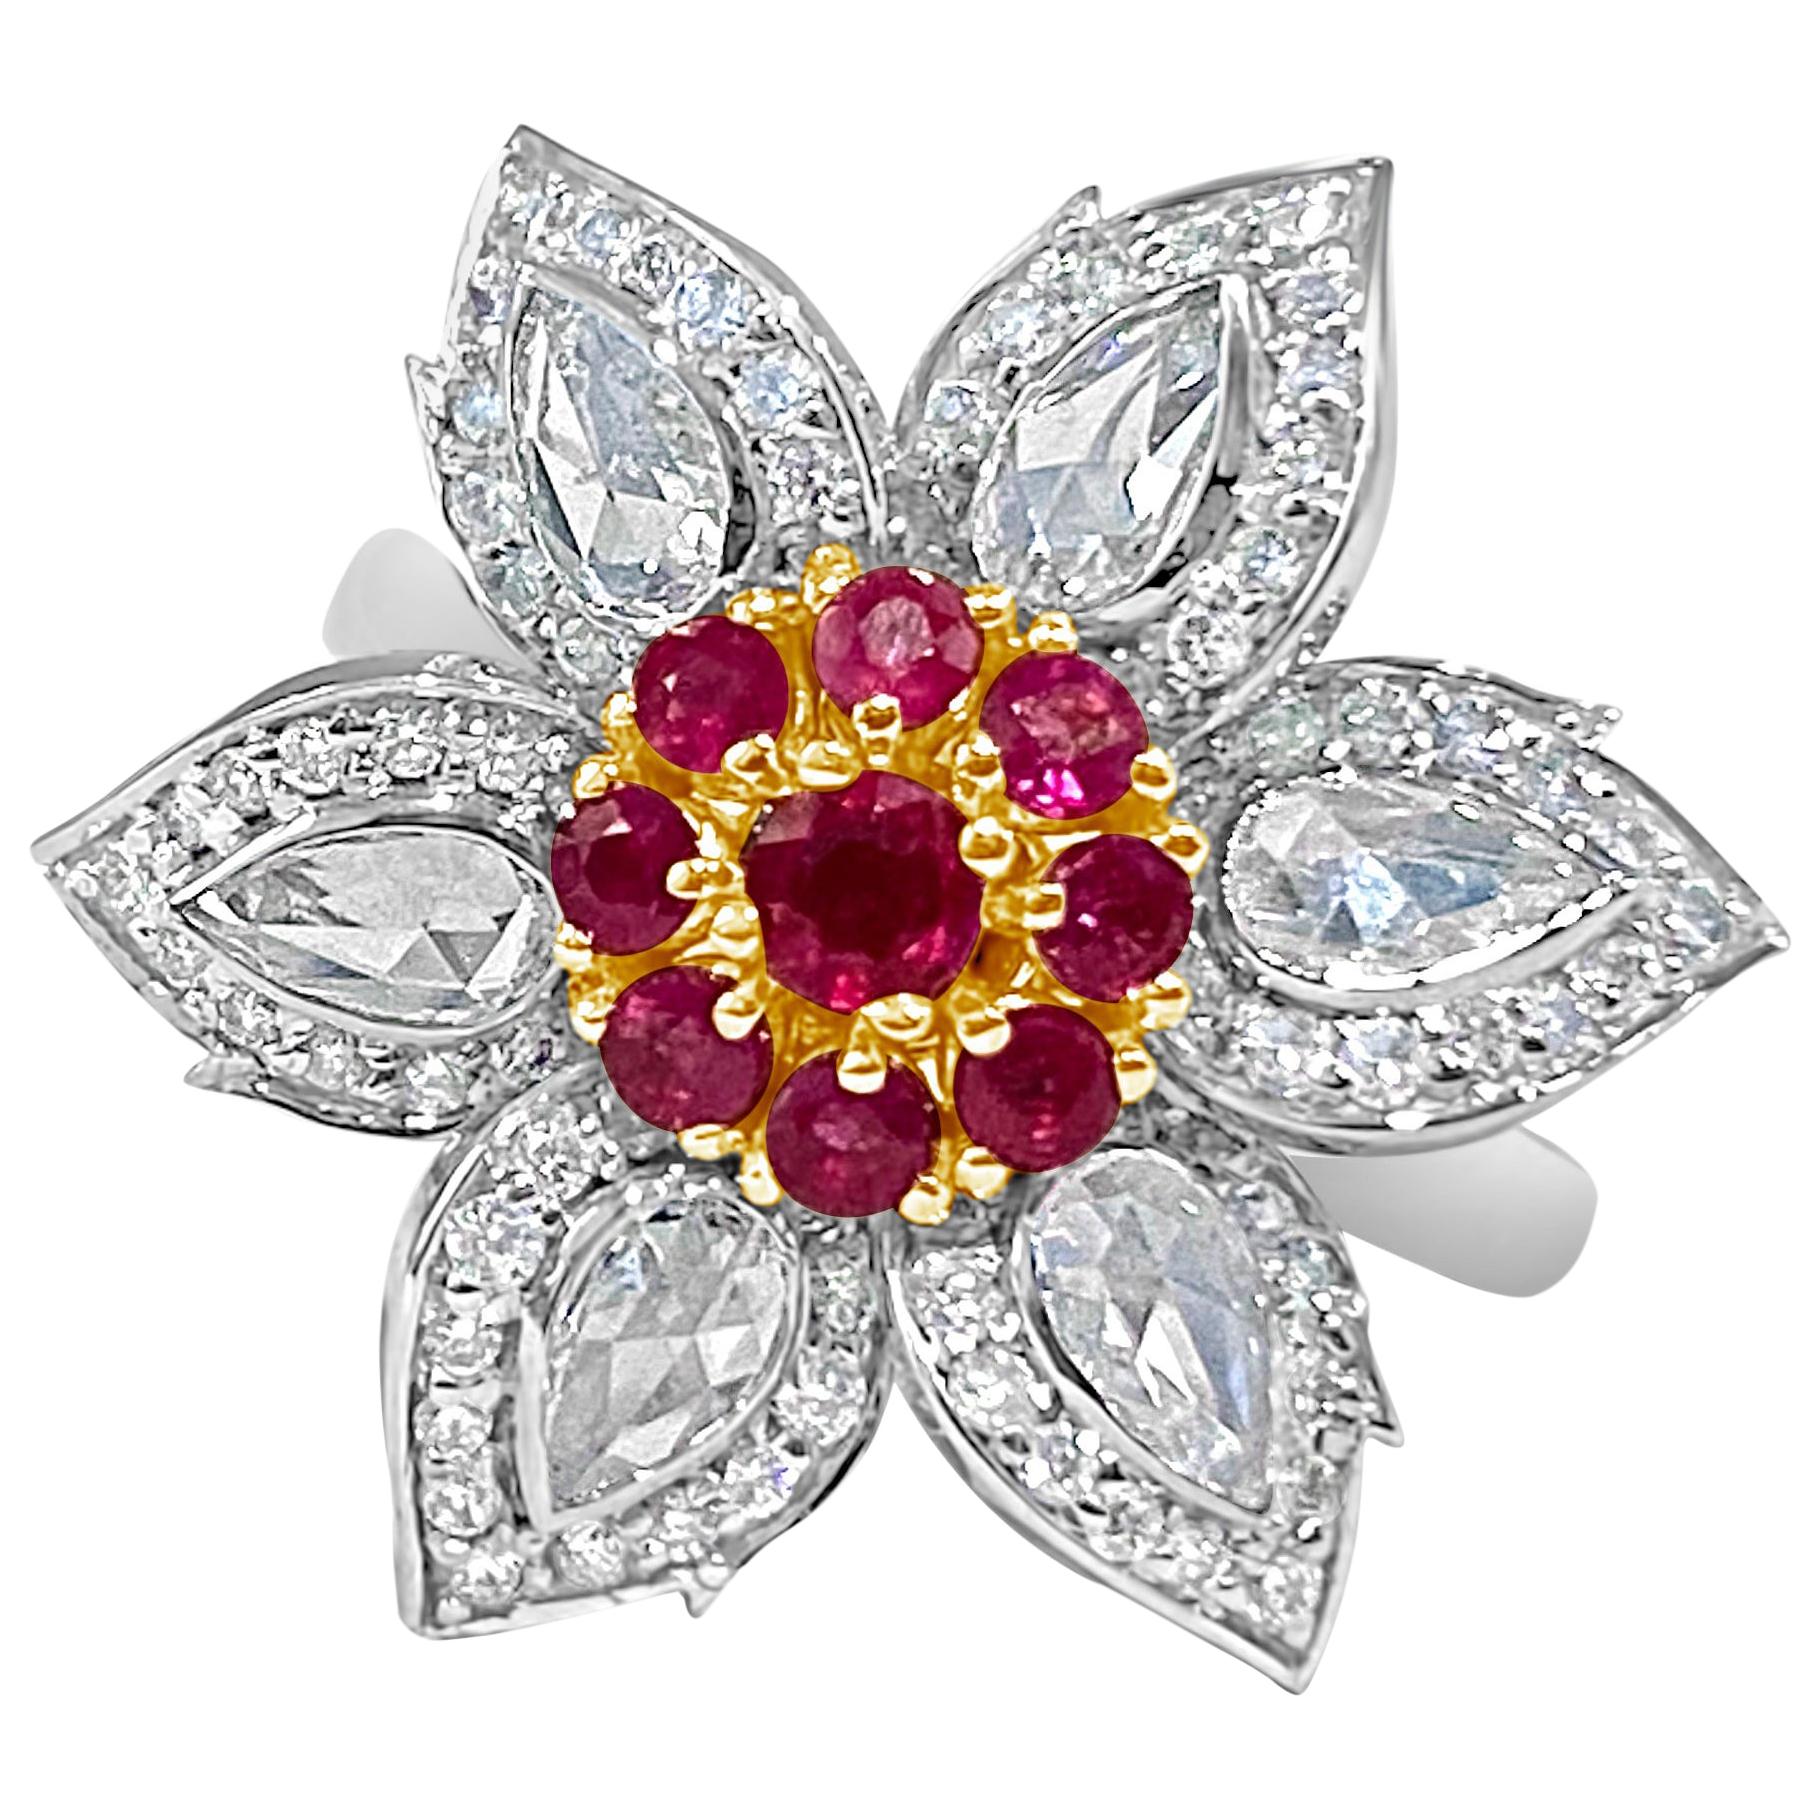 Natural Burmese Ruby and 1.27 Carat Rose Cut Diamond Ring, 18 Karat White Gold